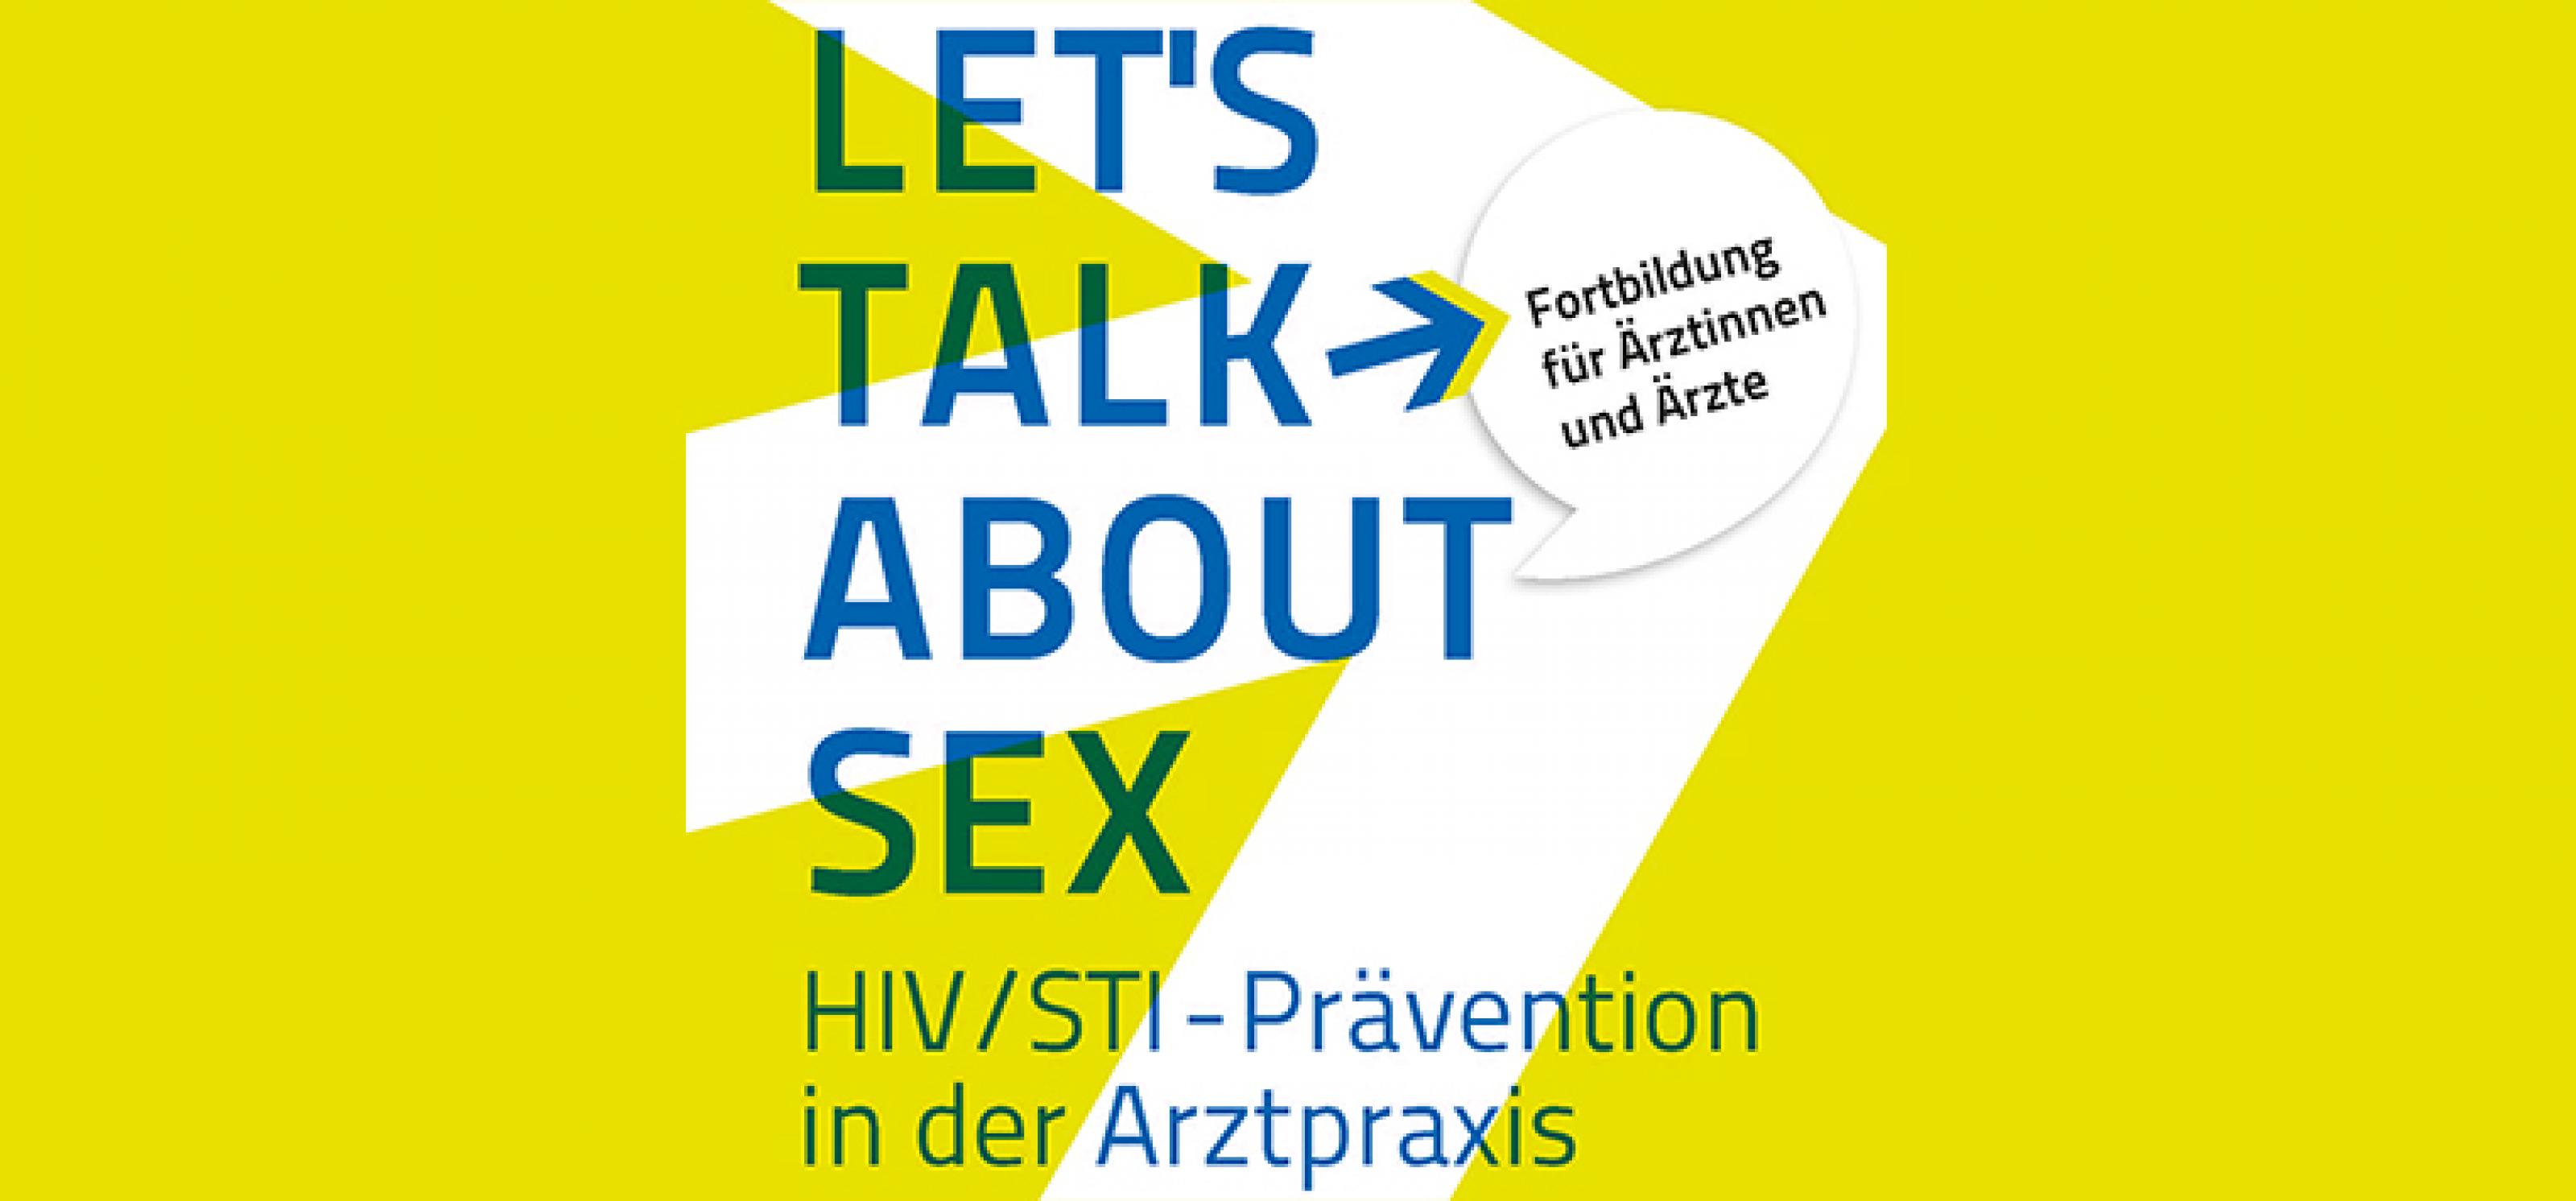 Lets Talk About Sex Auch An Uni Lübeck Deutsche Aids Hilfe 